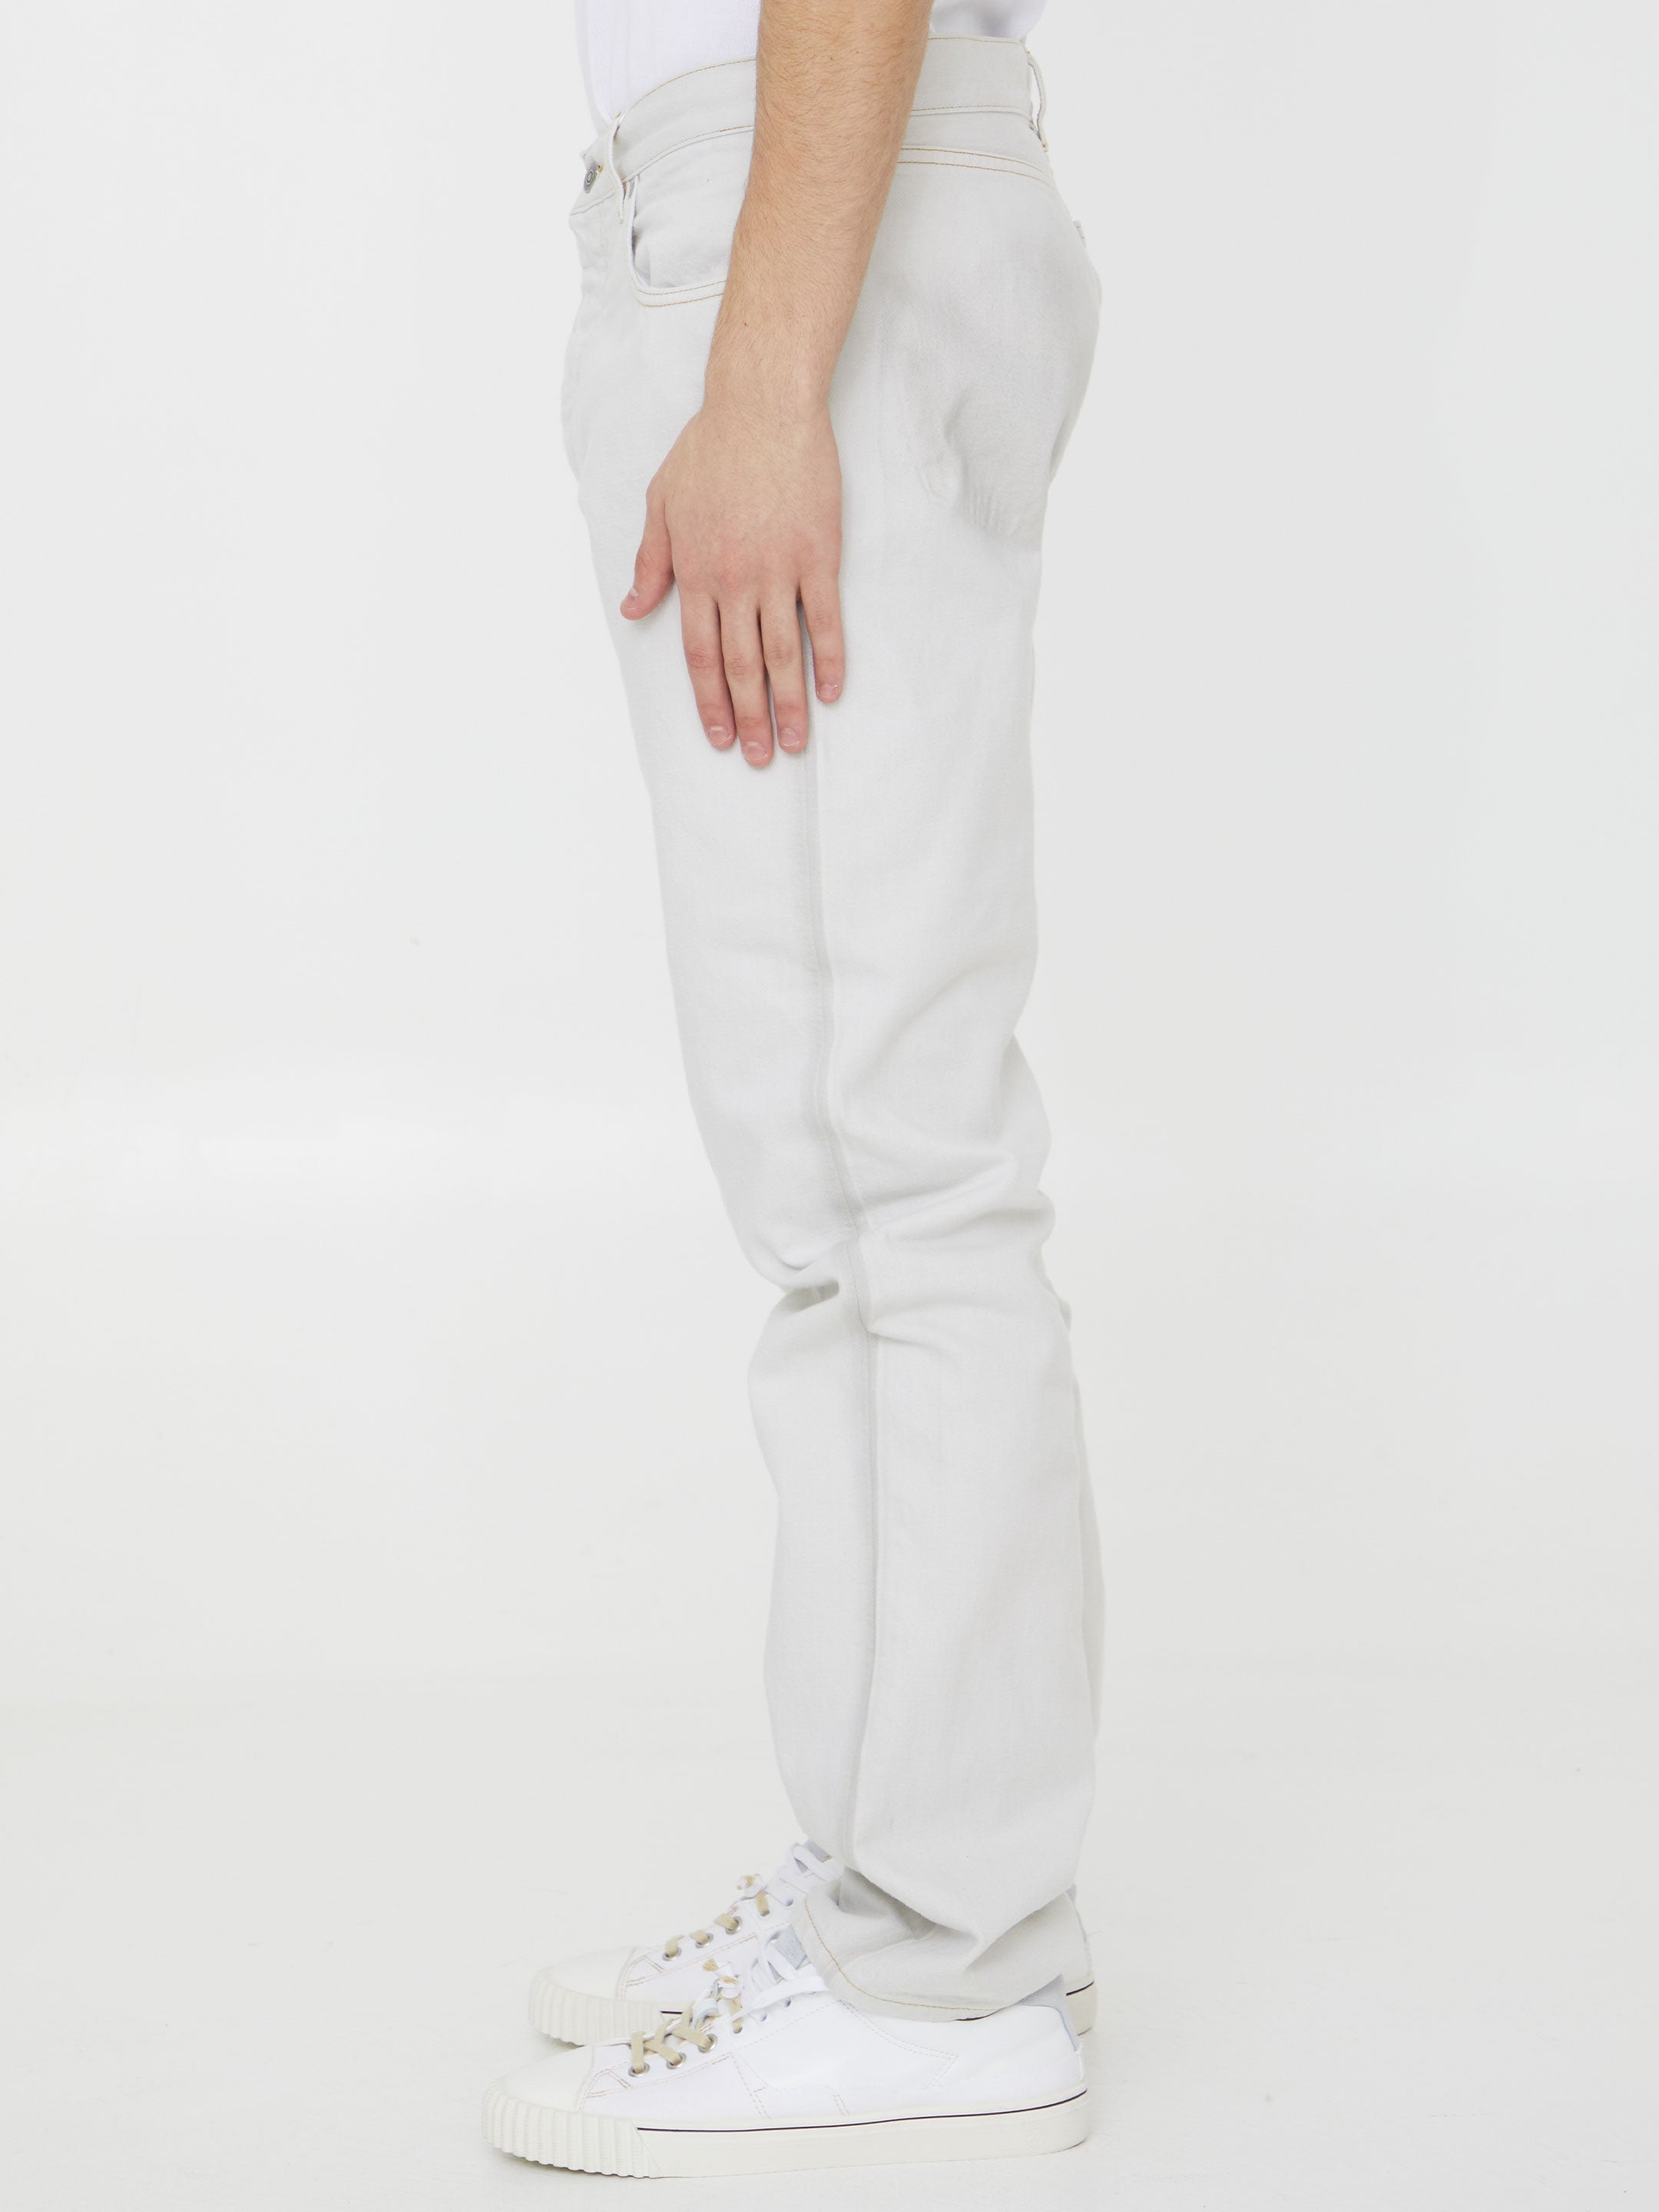 MAISON-MARGIELA-OUTLET-SALE-Cotton-denim-jeans-Jeans-34-WHITE-ARCHIVE-COLLECTION-3.jpg